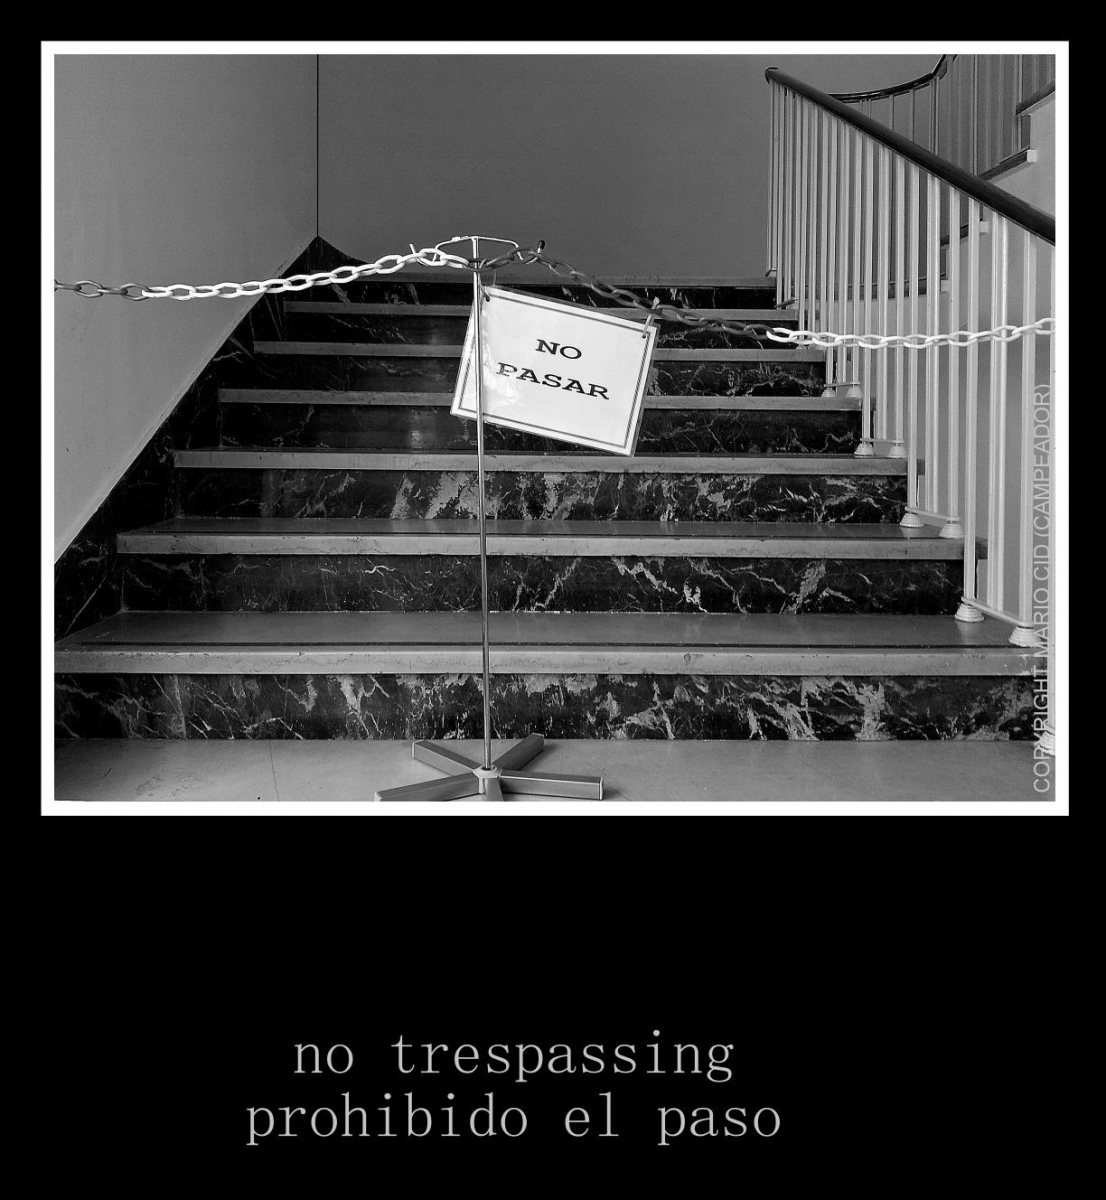 prohibido el paso -- no trespassing.  Photo by Mario Cid (Campeador).